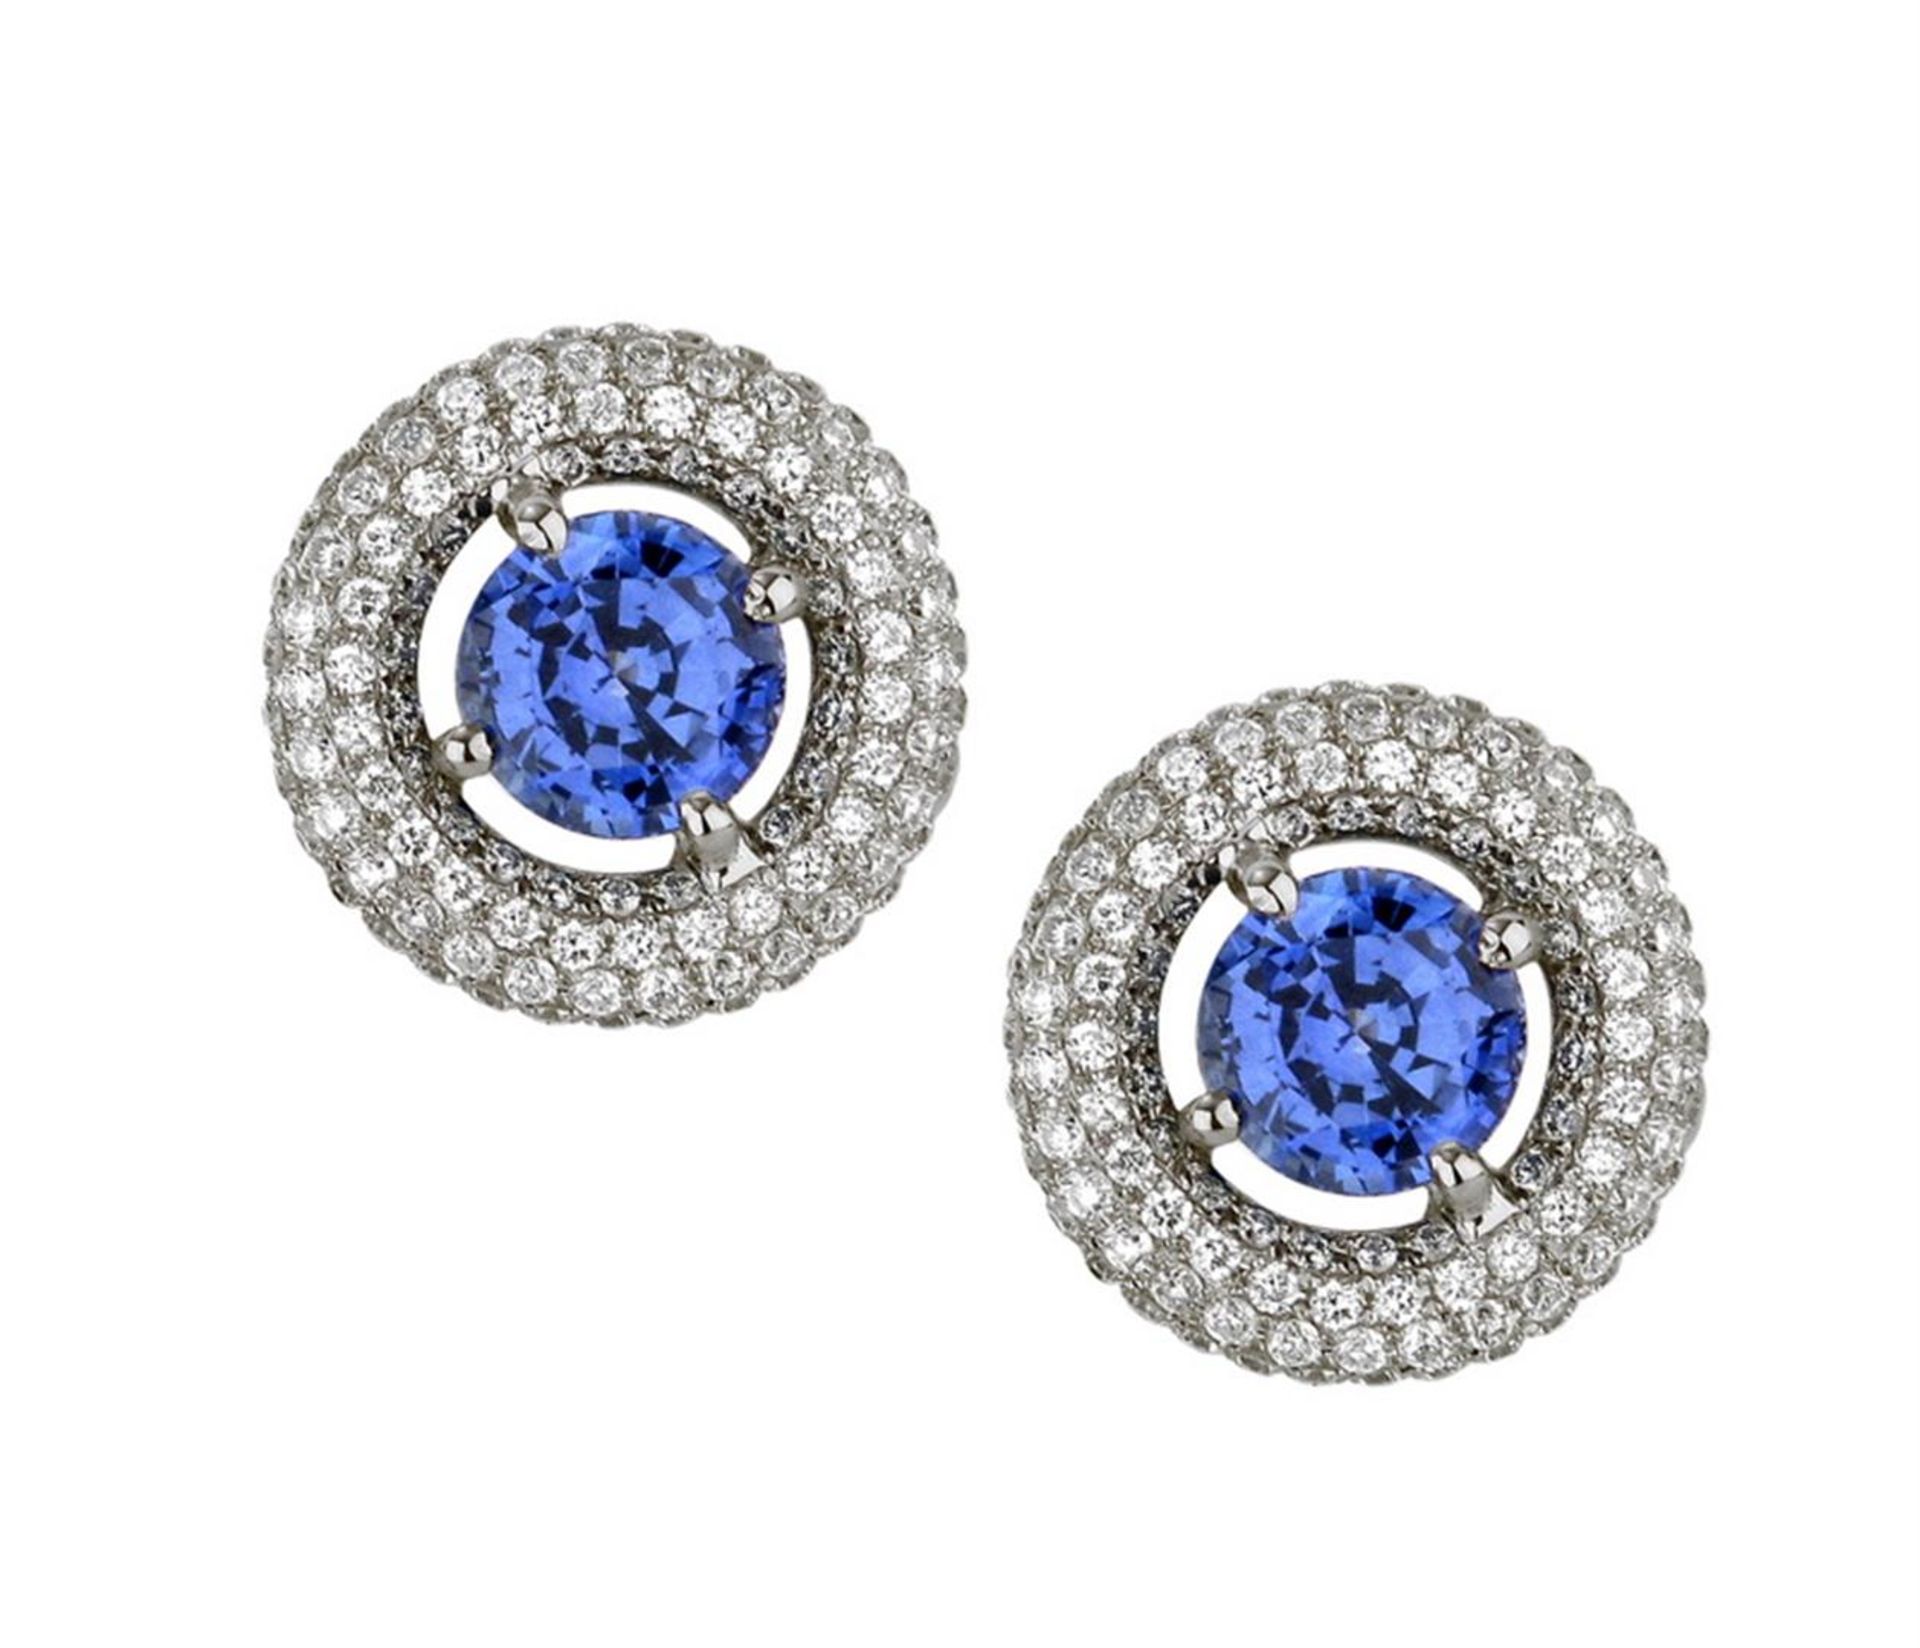 18k White Gold 3.50 ctw Diamond and Blue Sapphire Earrings, (VS1-VS2/G-H)